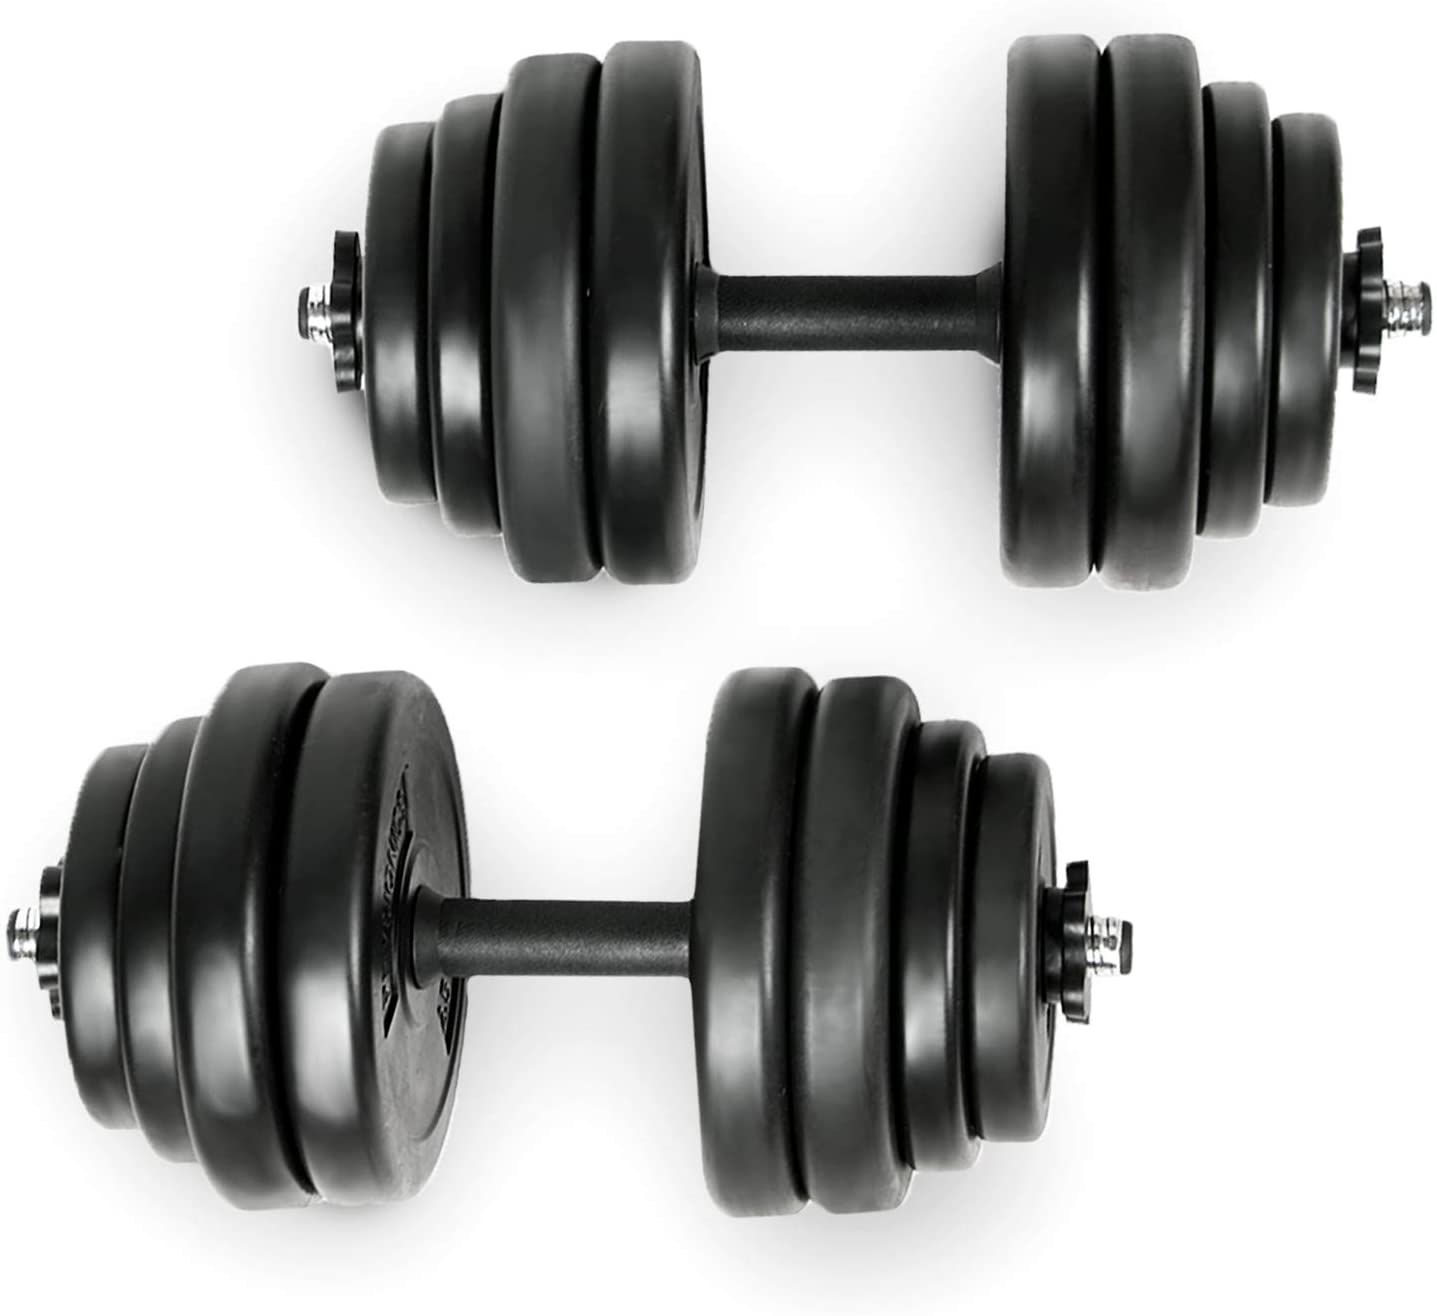 Set d'haltères courts poids barres disques fitness musculation biceps 10 kg